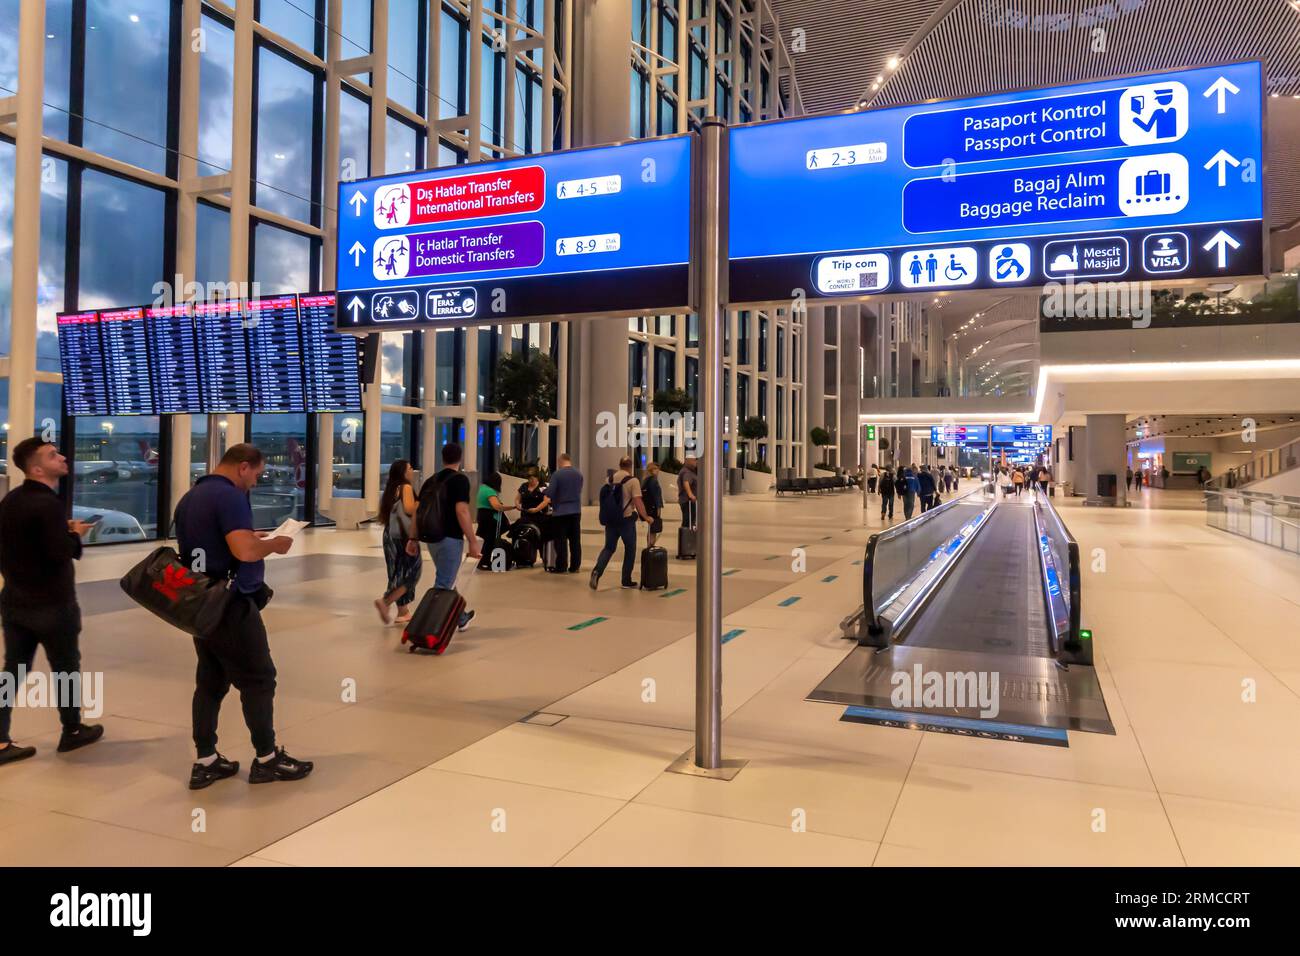 Passagers devant les panneaux directionnels - contrôle des passeports, récupération des bagages, à l'aéroport Havalimani d'Istanbul - IST Airport interior, Turquie Banque D'Images